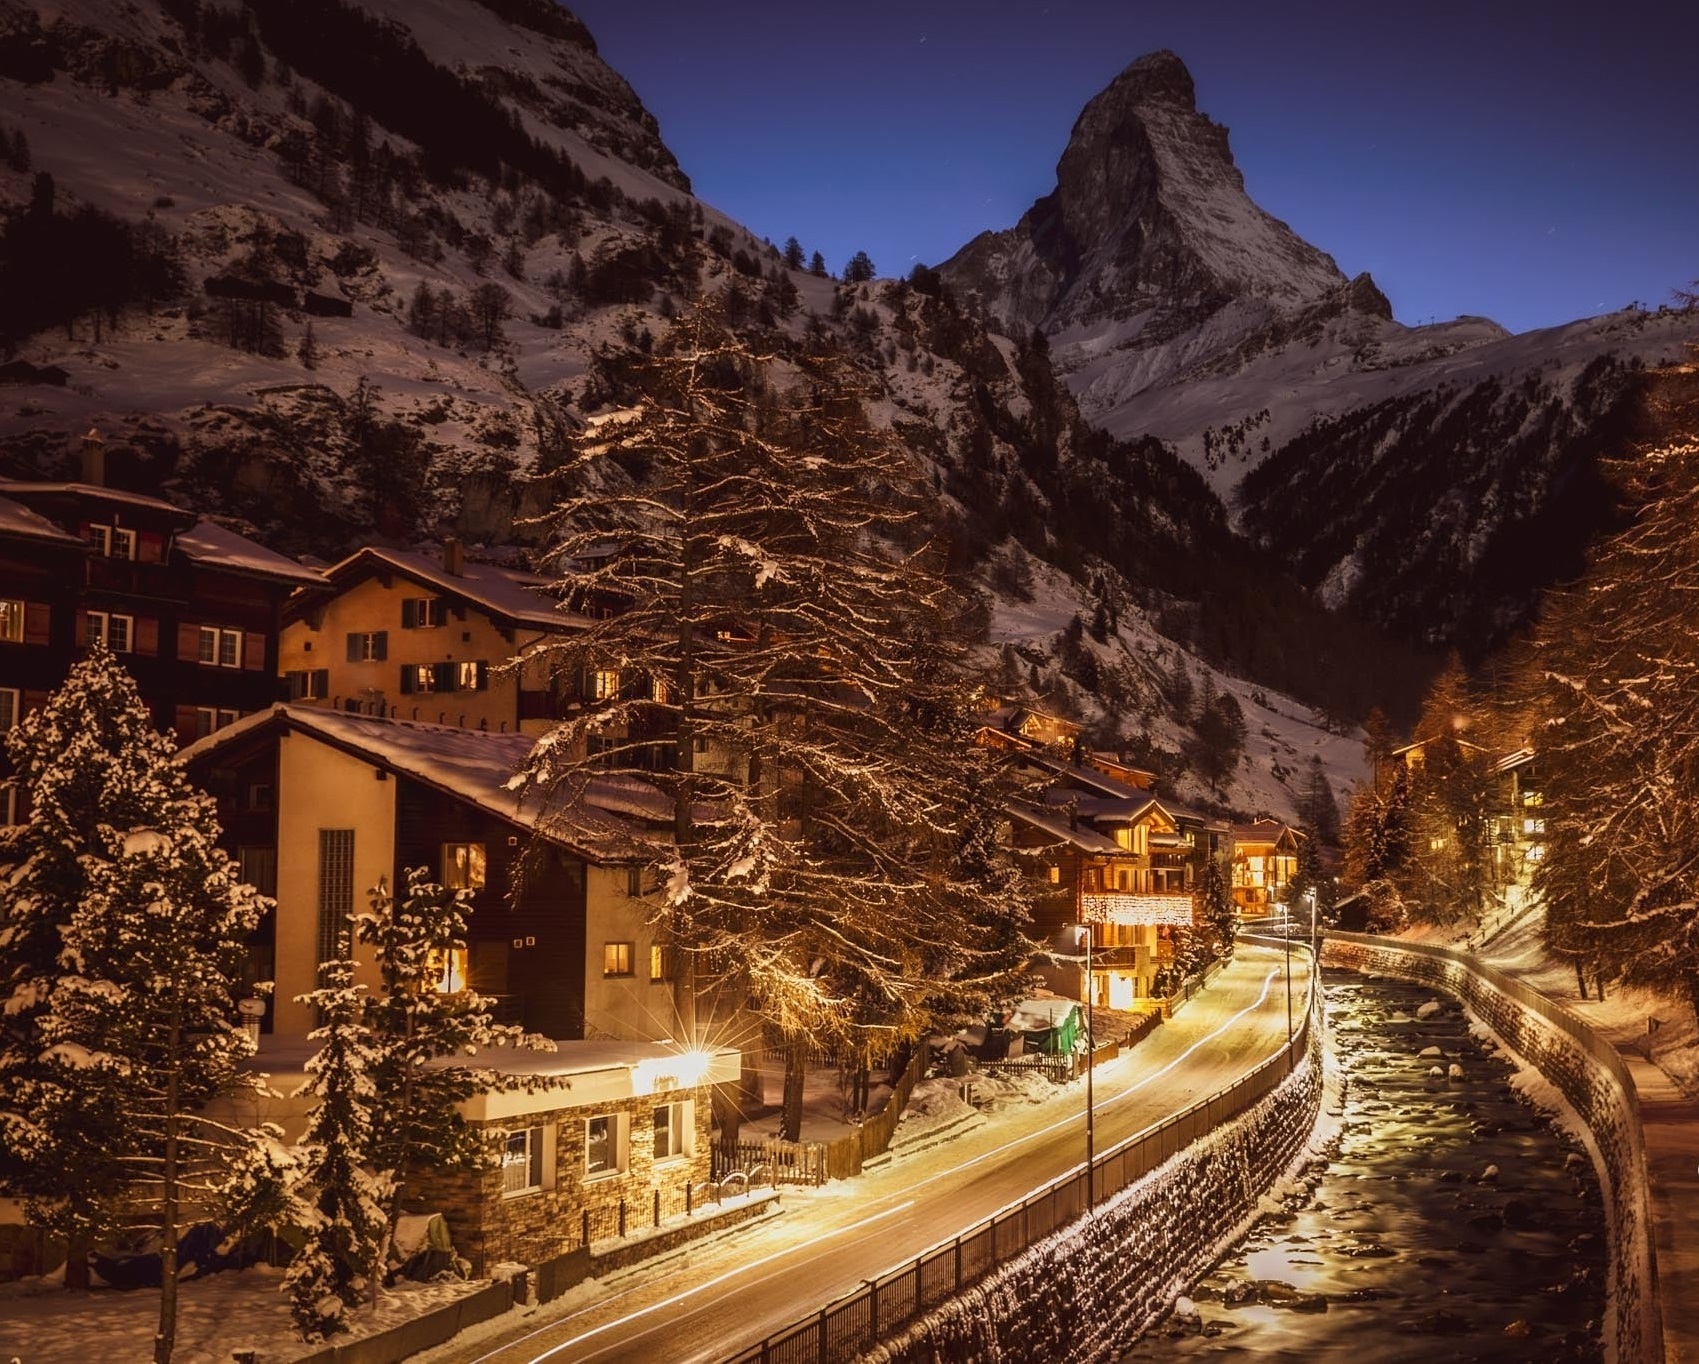 Khung cảnh Giáng sinh như cổ tích tại Zermatt - thị trấn tuyết trắng đẹp nhất mùa Noel